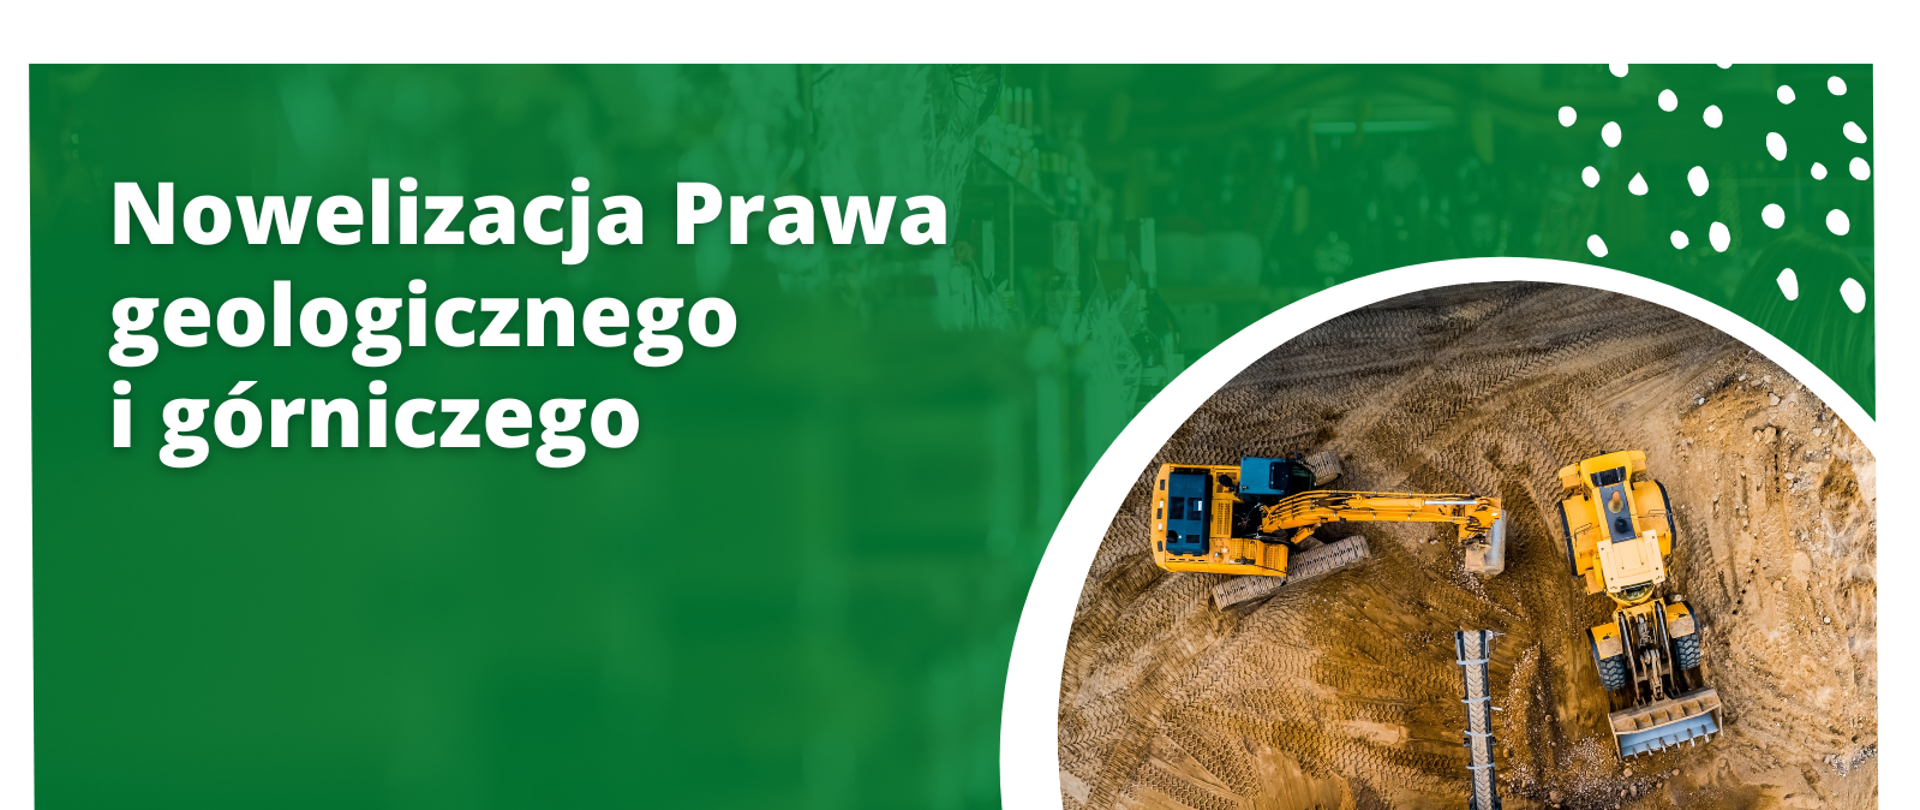 Nowelizacja prawa geologicznego i górniczego przyniesie szereg korzyści dla kraju, przedsiębiorców i obywateli. 